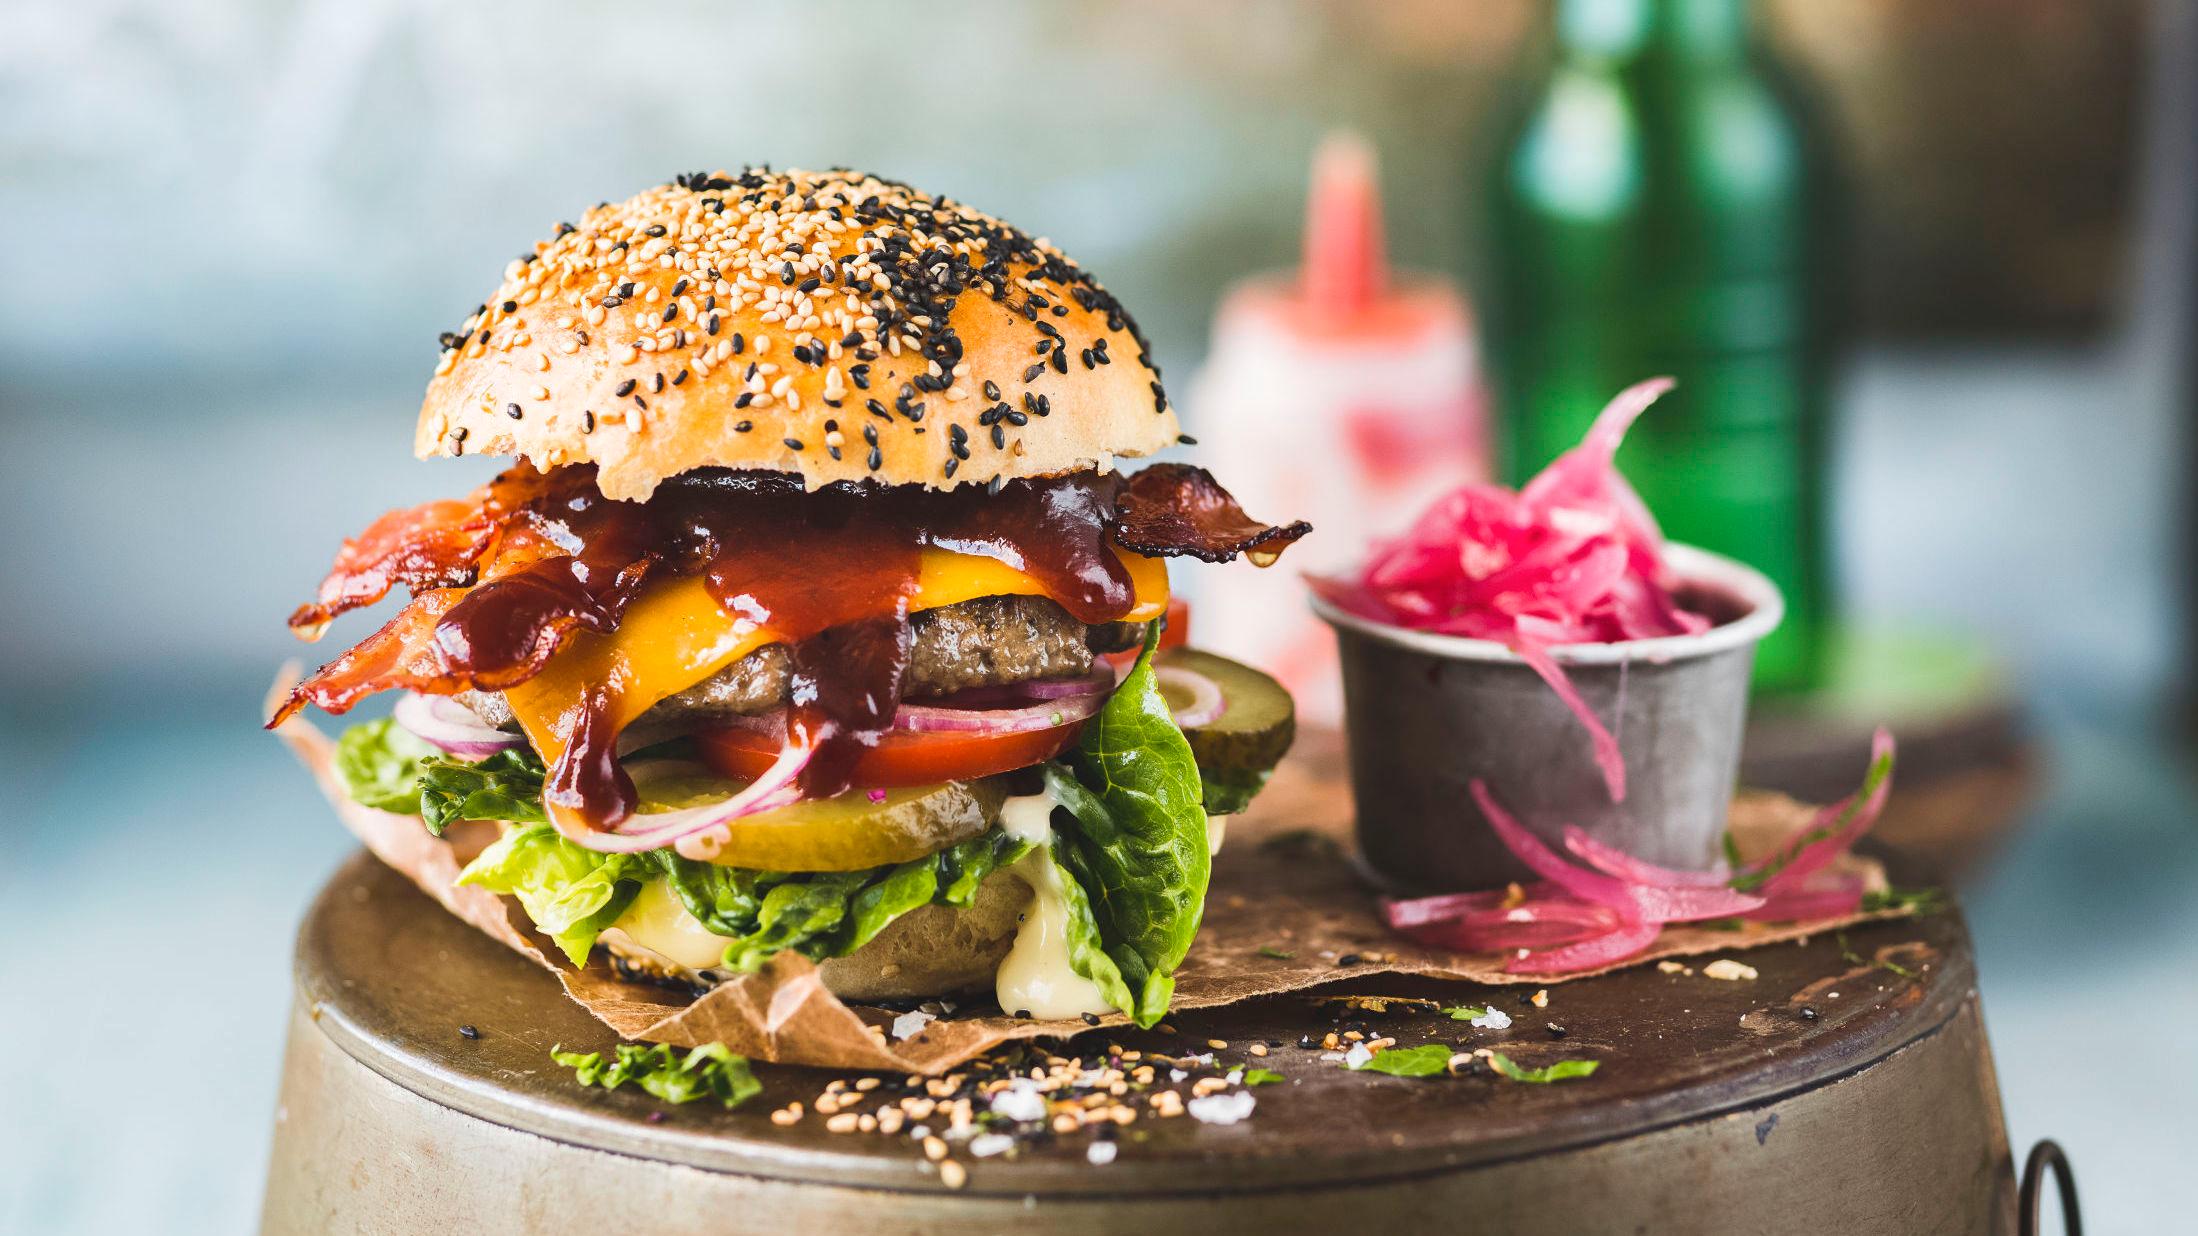 SAFTIG BURGER: En klassisk hamburger med ost og bacon er aldri feil. Foto: Krister Sørbø, VG